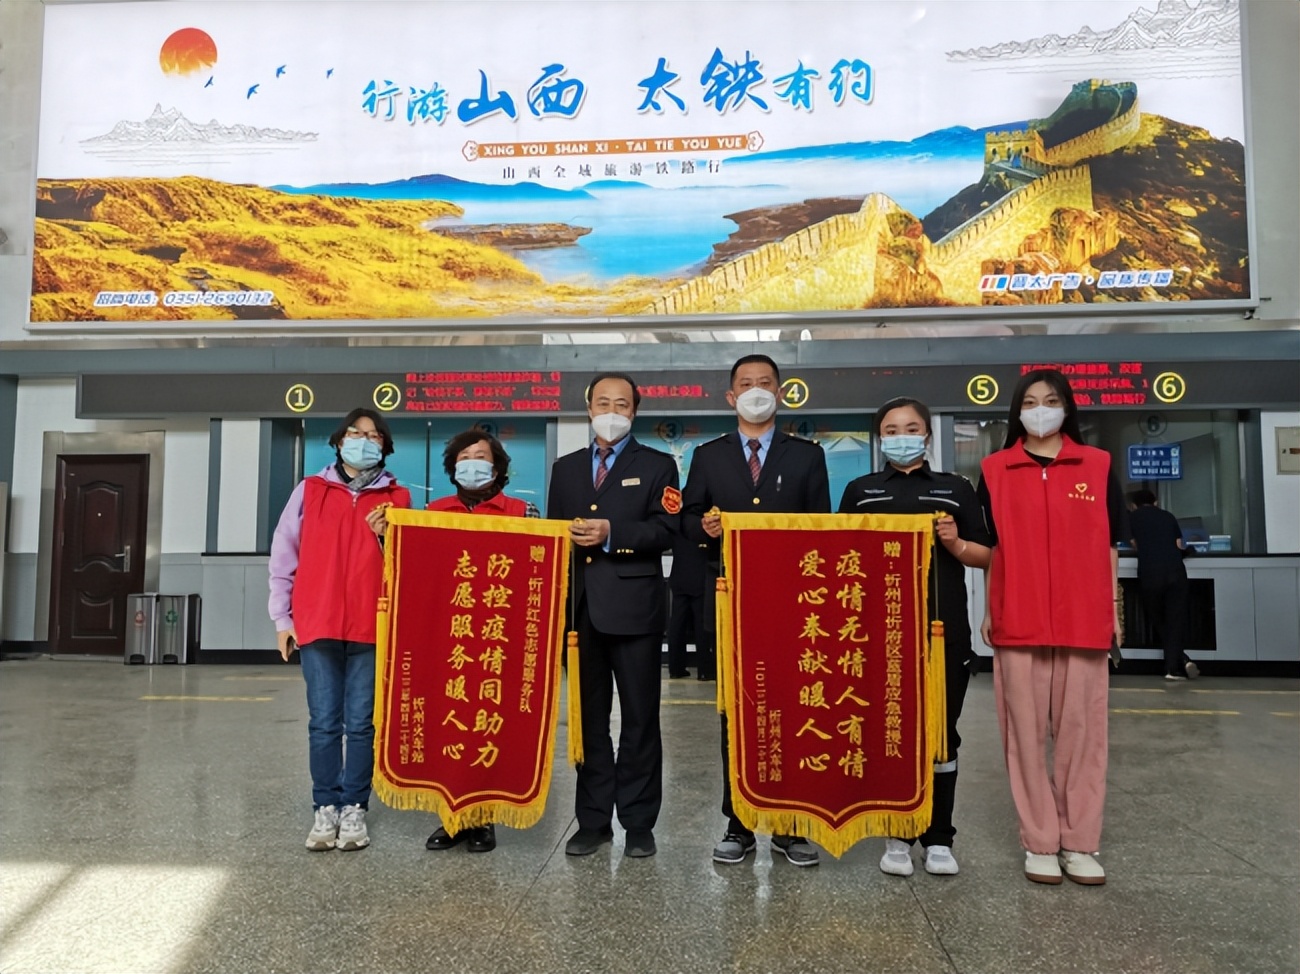 忻州火车站表彰爱心团队疫情防控所做的奉献并颁发锦旗